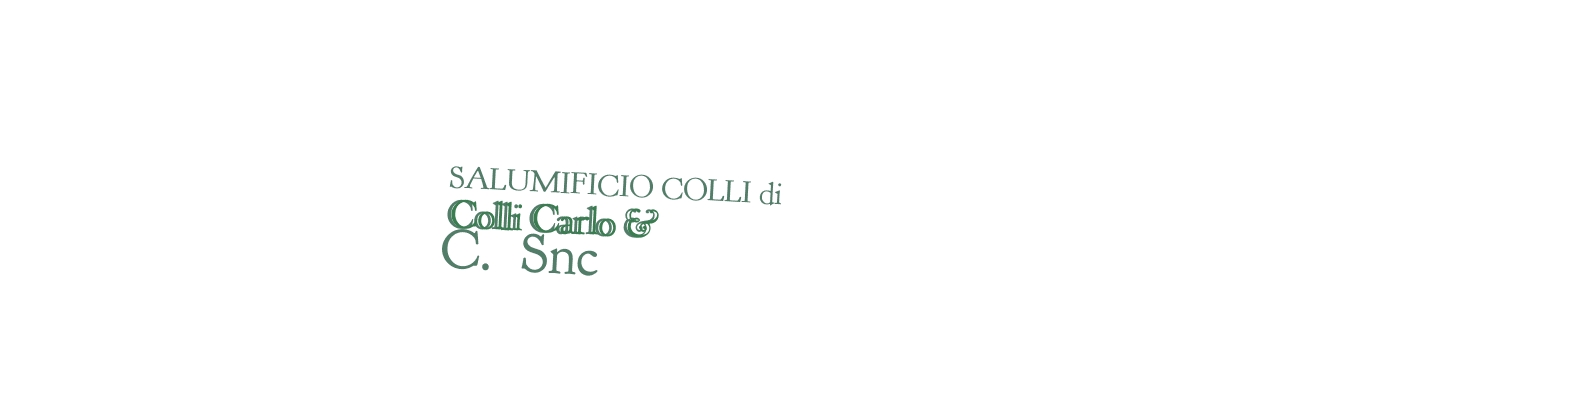 logo Salumificio Colli di Colli Carlo & C. Snc